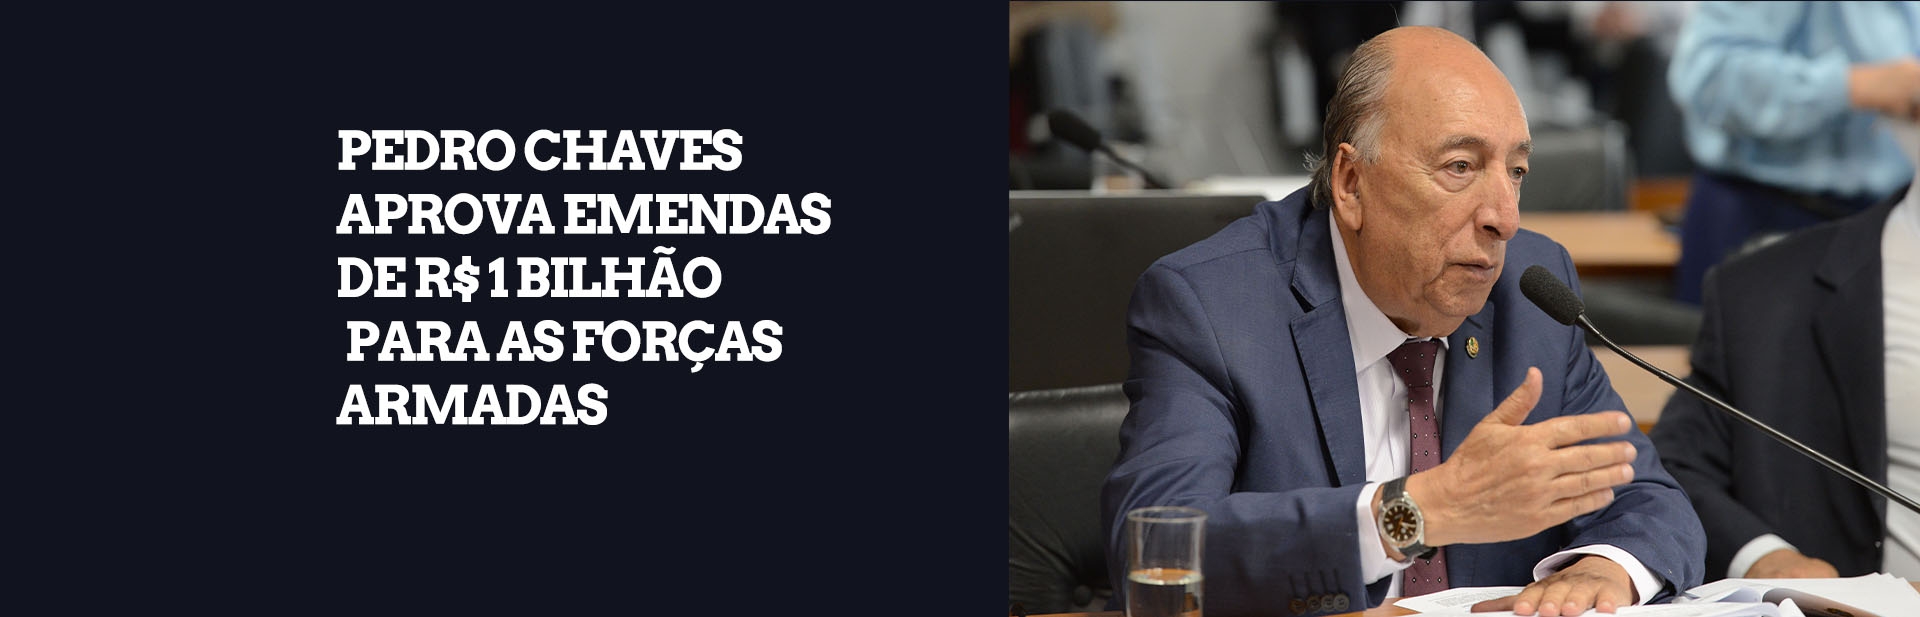 Como relator, Pedro Chaves aprova emendas de R$ 1 bilhão para as Forças Armadas